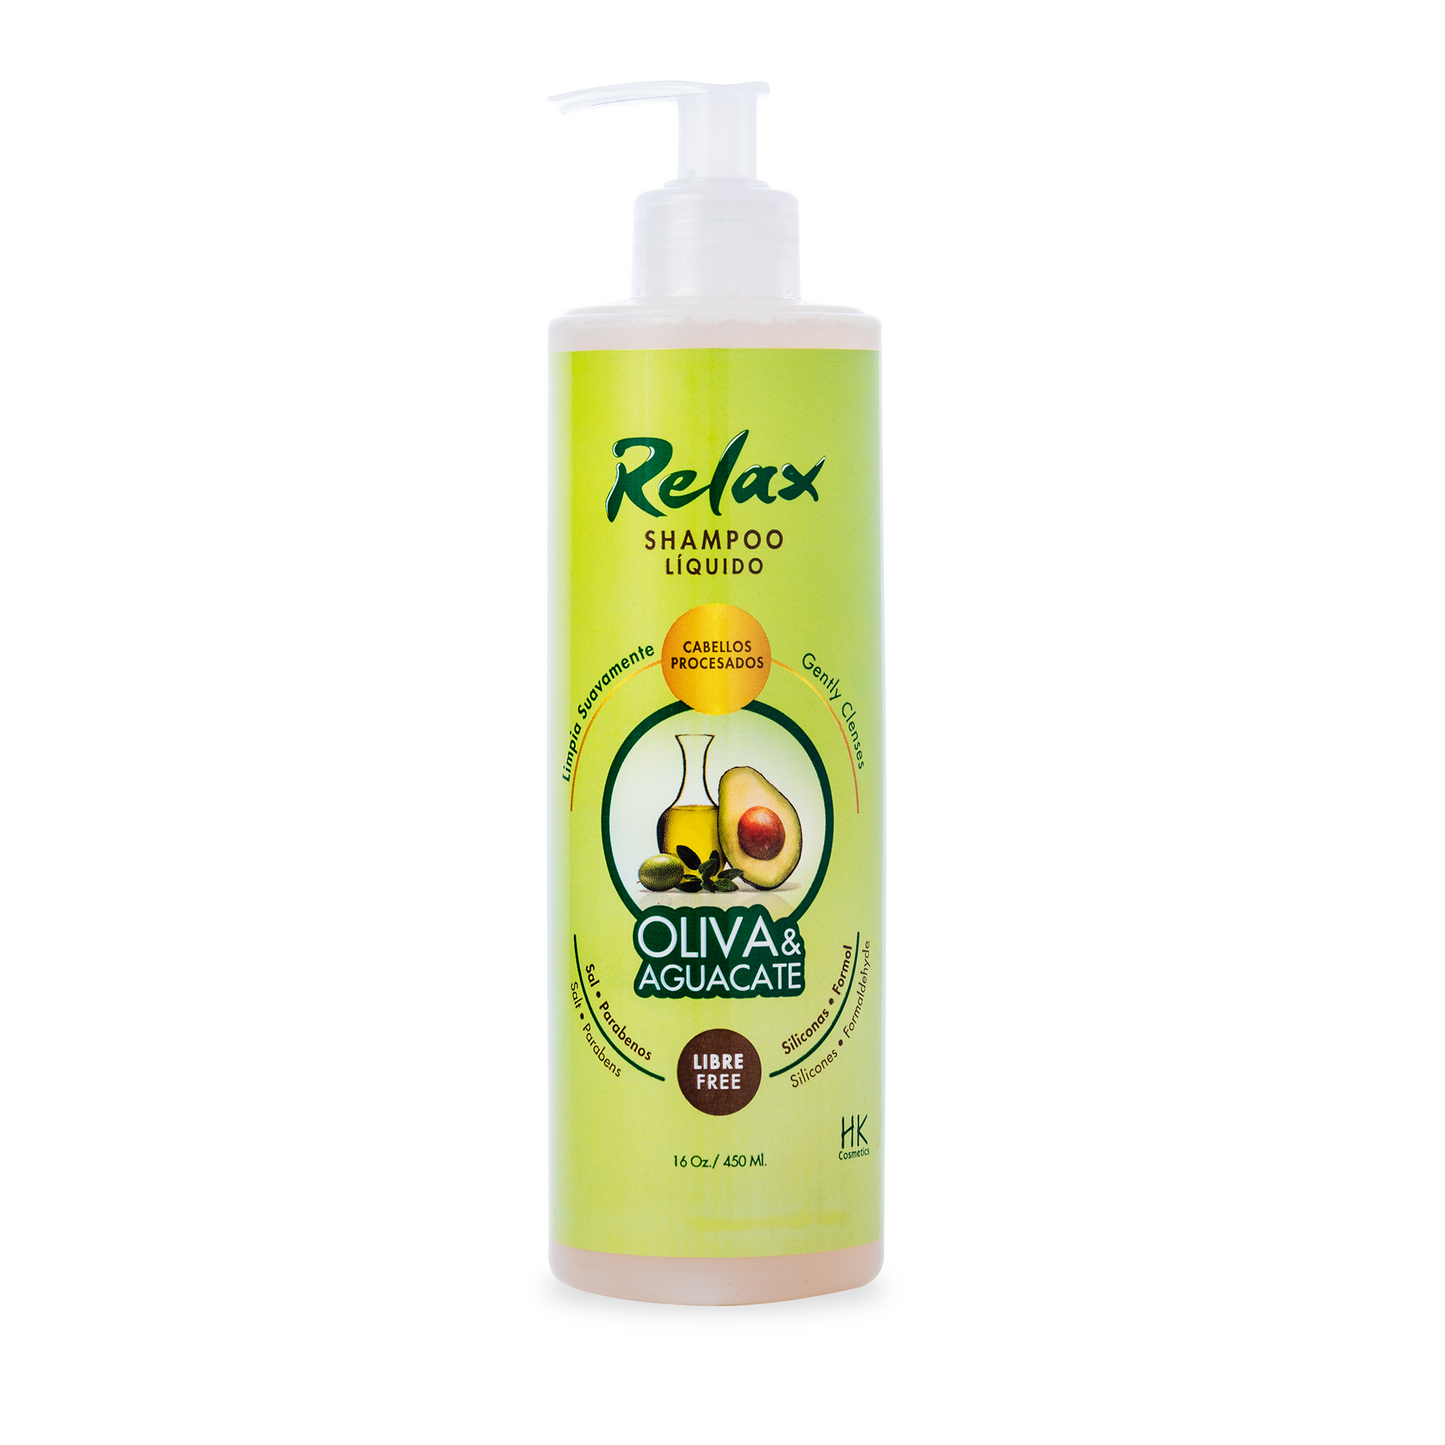 Shampoo Relax - Halka Store - ¡Tienda Online Afro Love, Curly Love y demás productos con envío a domicilio a todo el país!